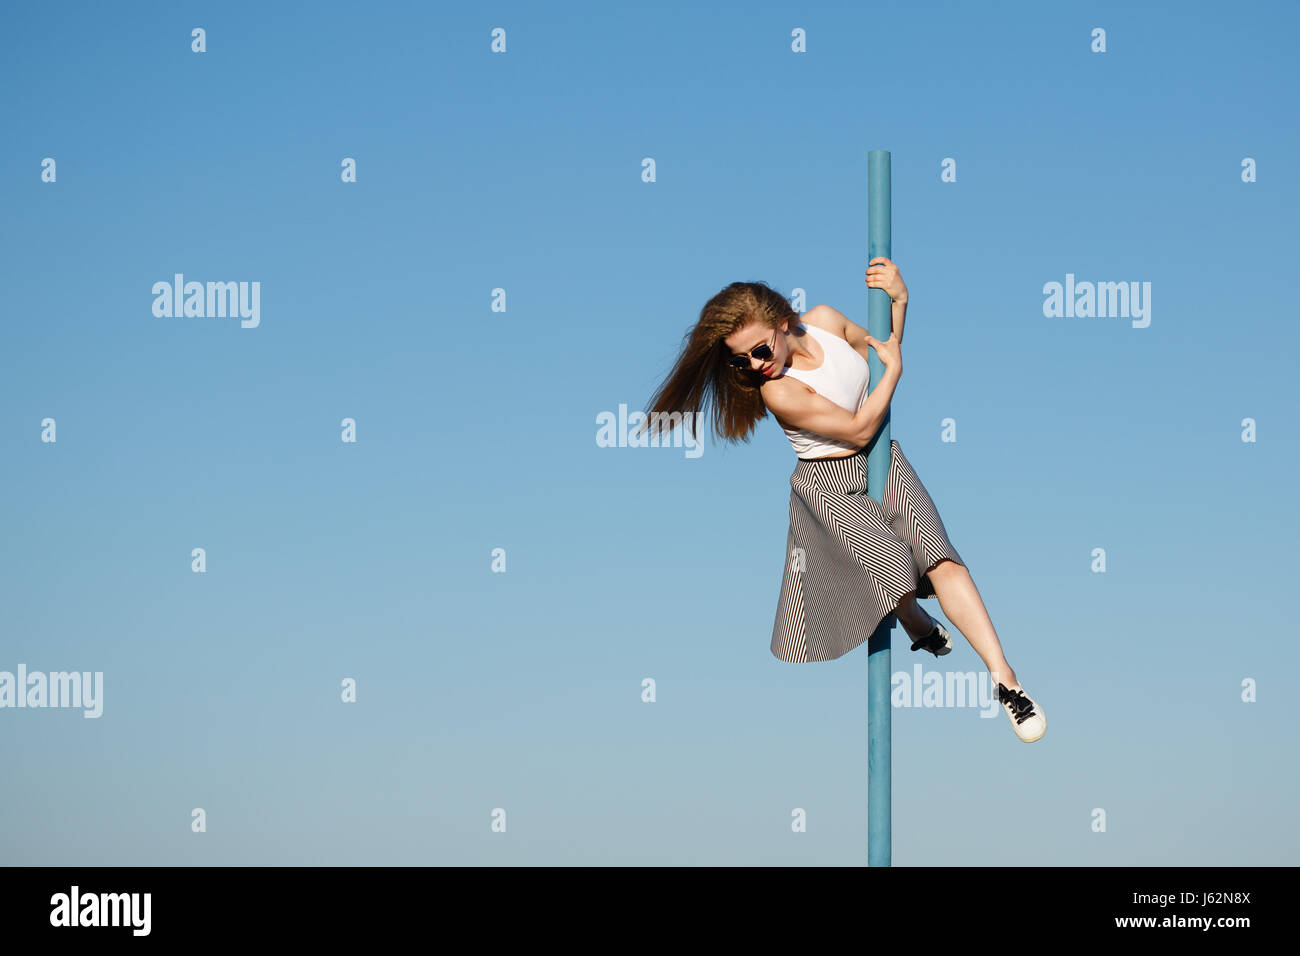 Junge attraktive Mädchen Hipster tanzen auf der Pole. Sie ist ein Top, einen Rock und eine Sonnenbrille tragen. Fliegende Haare. Das Konzept des Lebens in Bewegung. Stockfoto